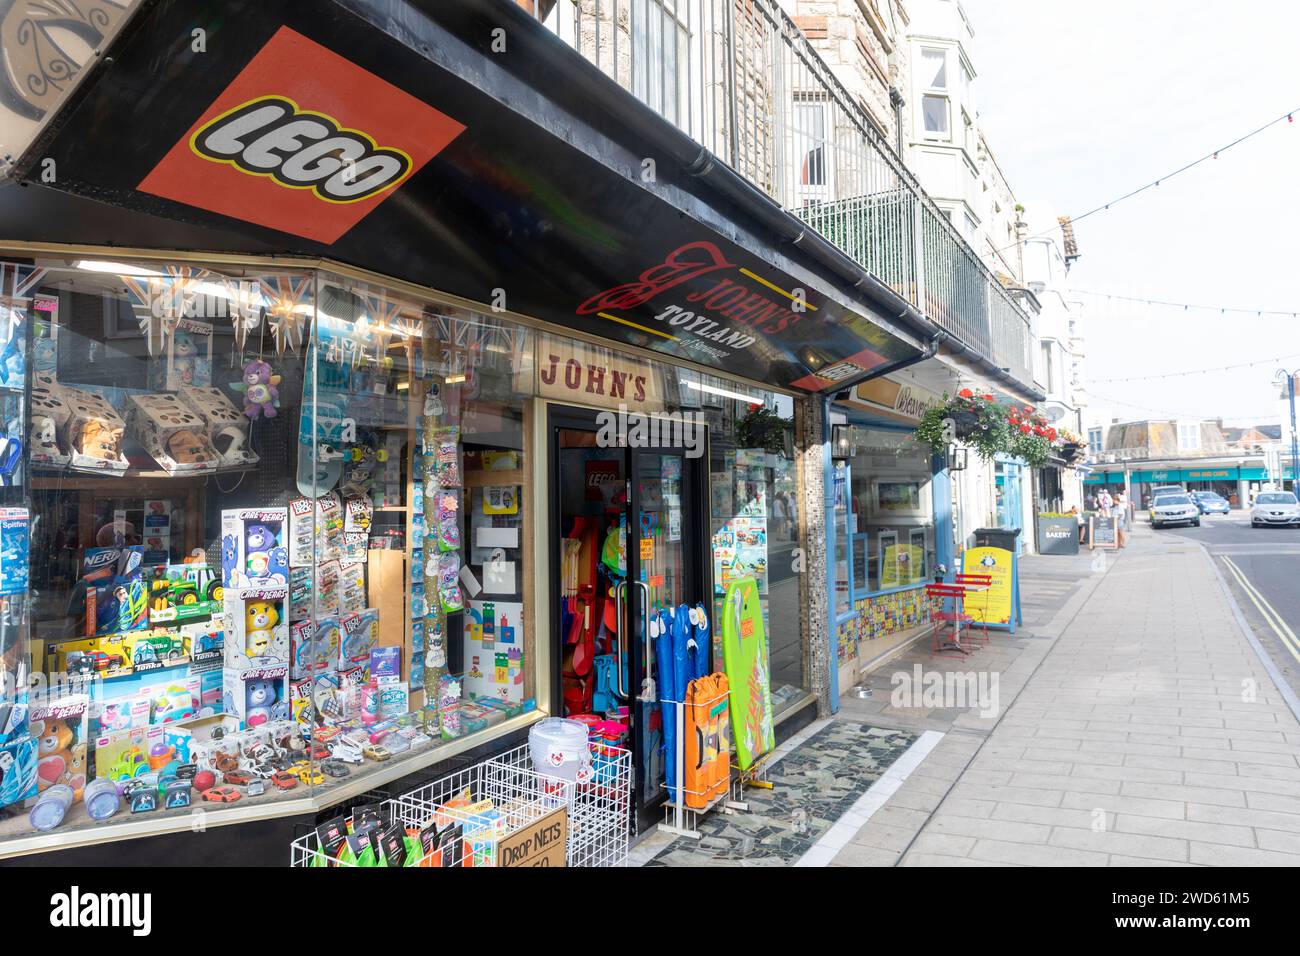 Swanage Isle of Purbeck, Dorset, magasin de jouets pour enfants dans le centre-ville avec des produits lego disponibles, Angleterre, Royaume-Uni, 2023 Banque D'Images